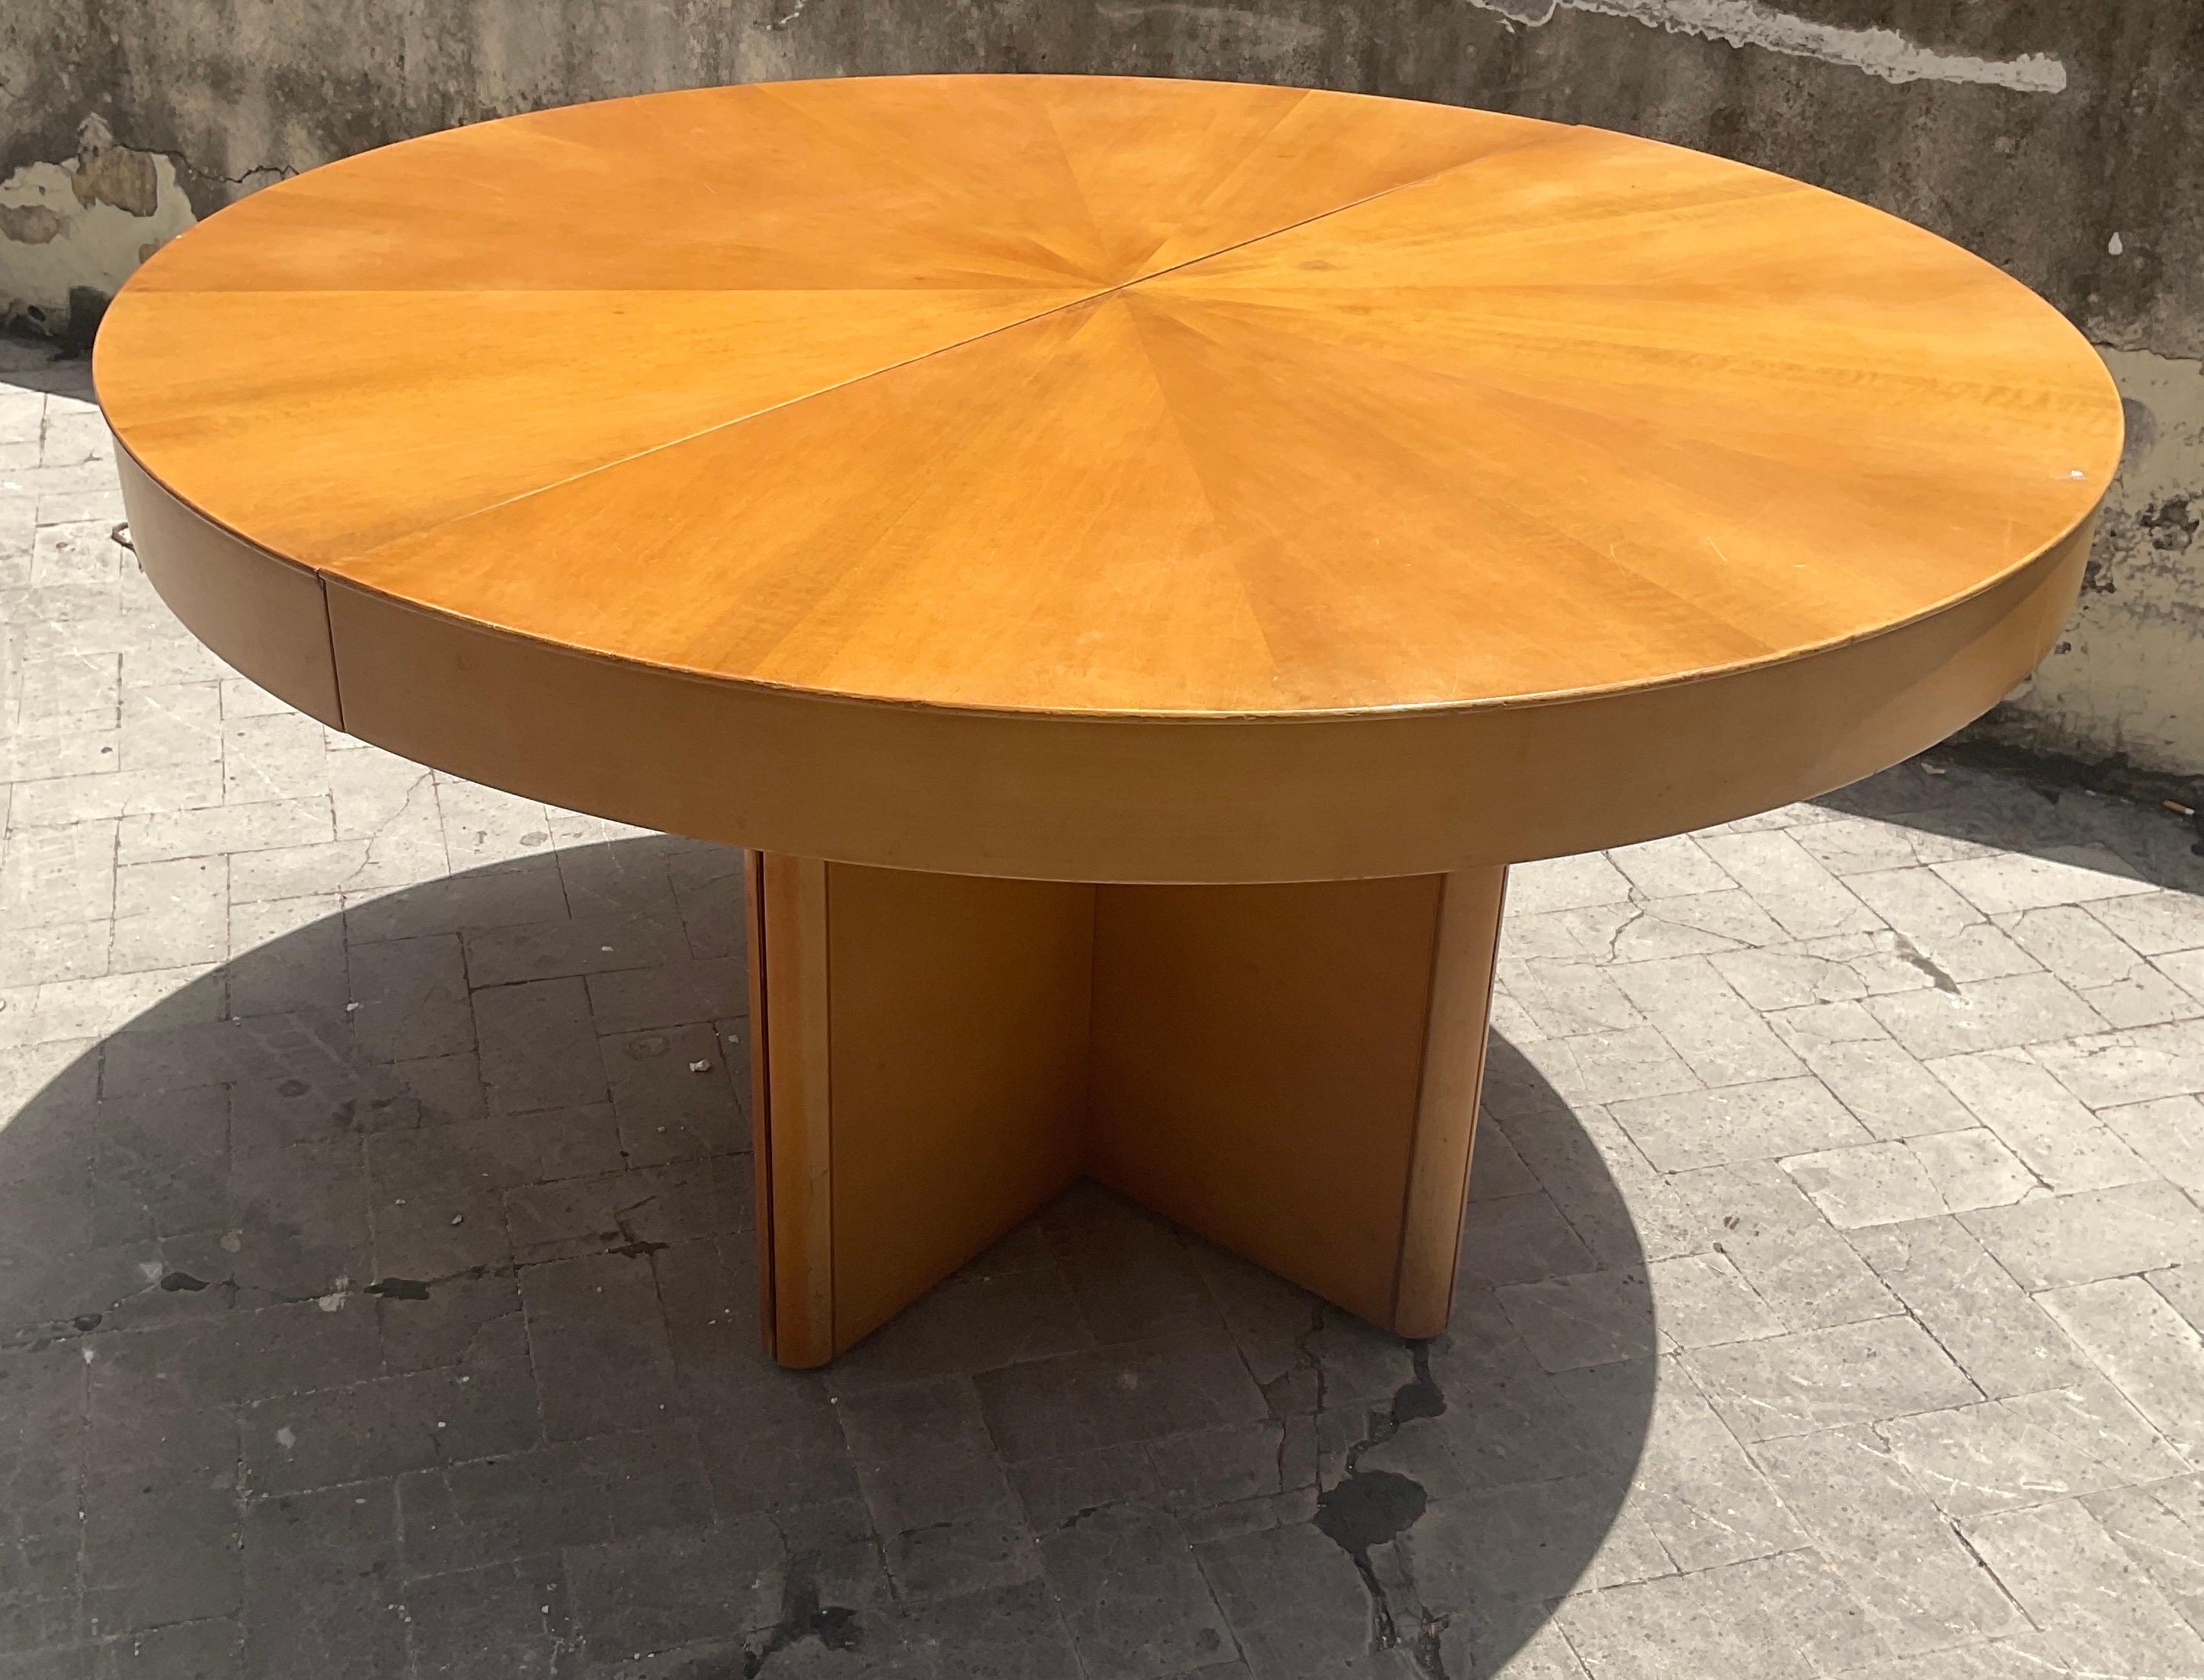 Walnut Fiorenza extendible round table in walnut by Tito Agnoli for Molteni, 70s